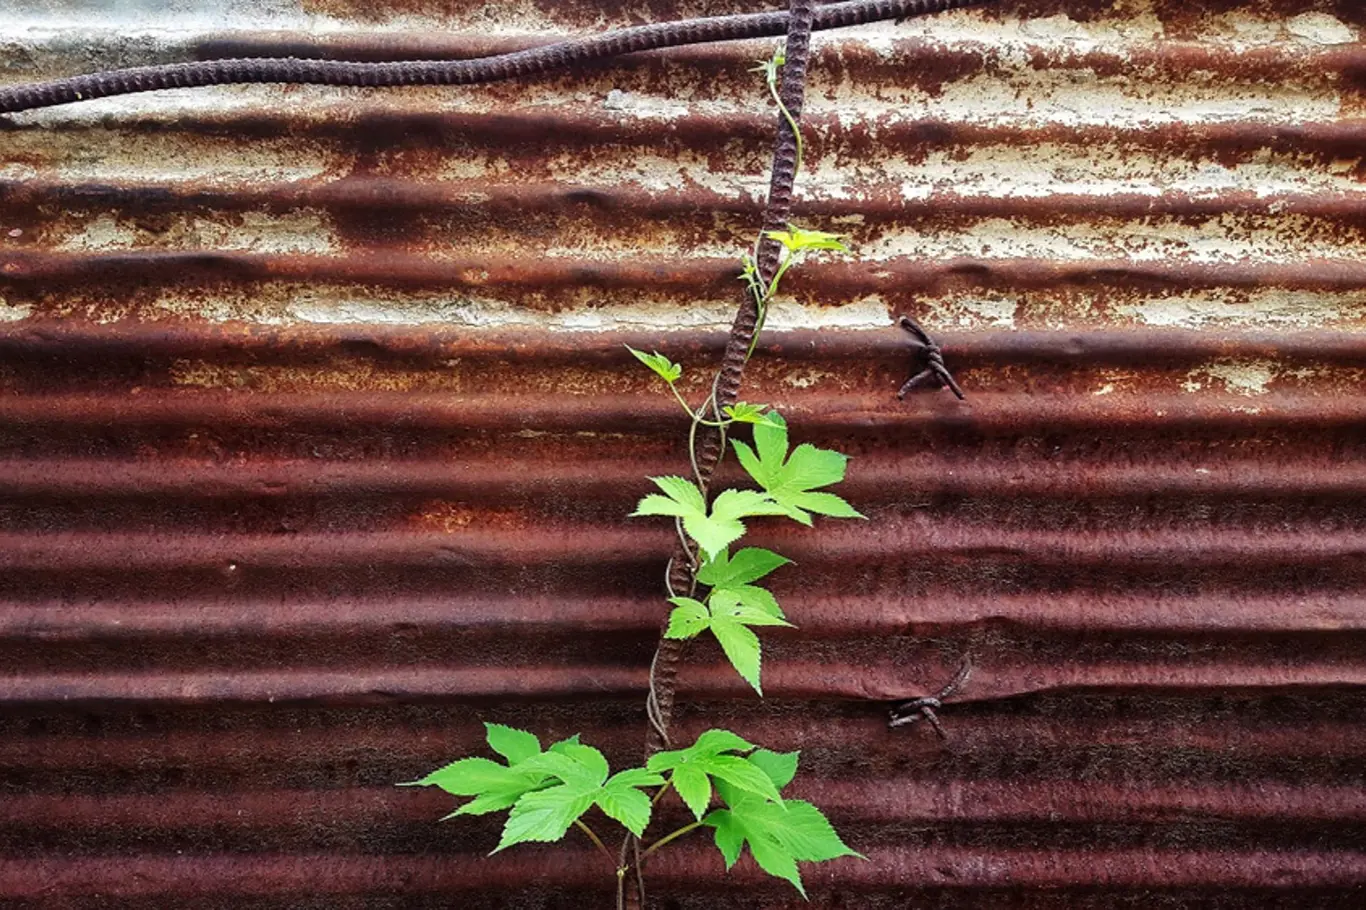 Jednoletý chmel japonský se pěstuje jako okrasná popínavá rostlina.